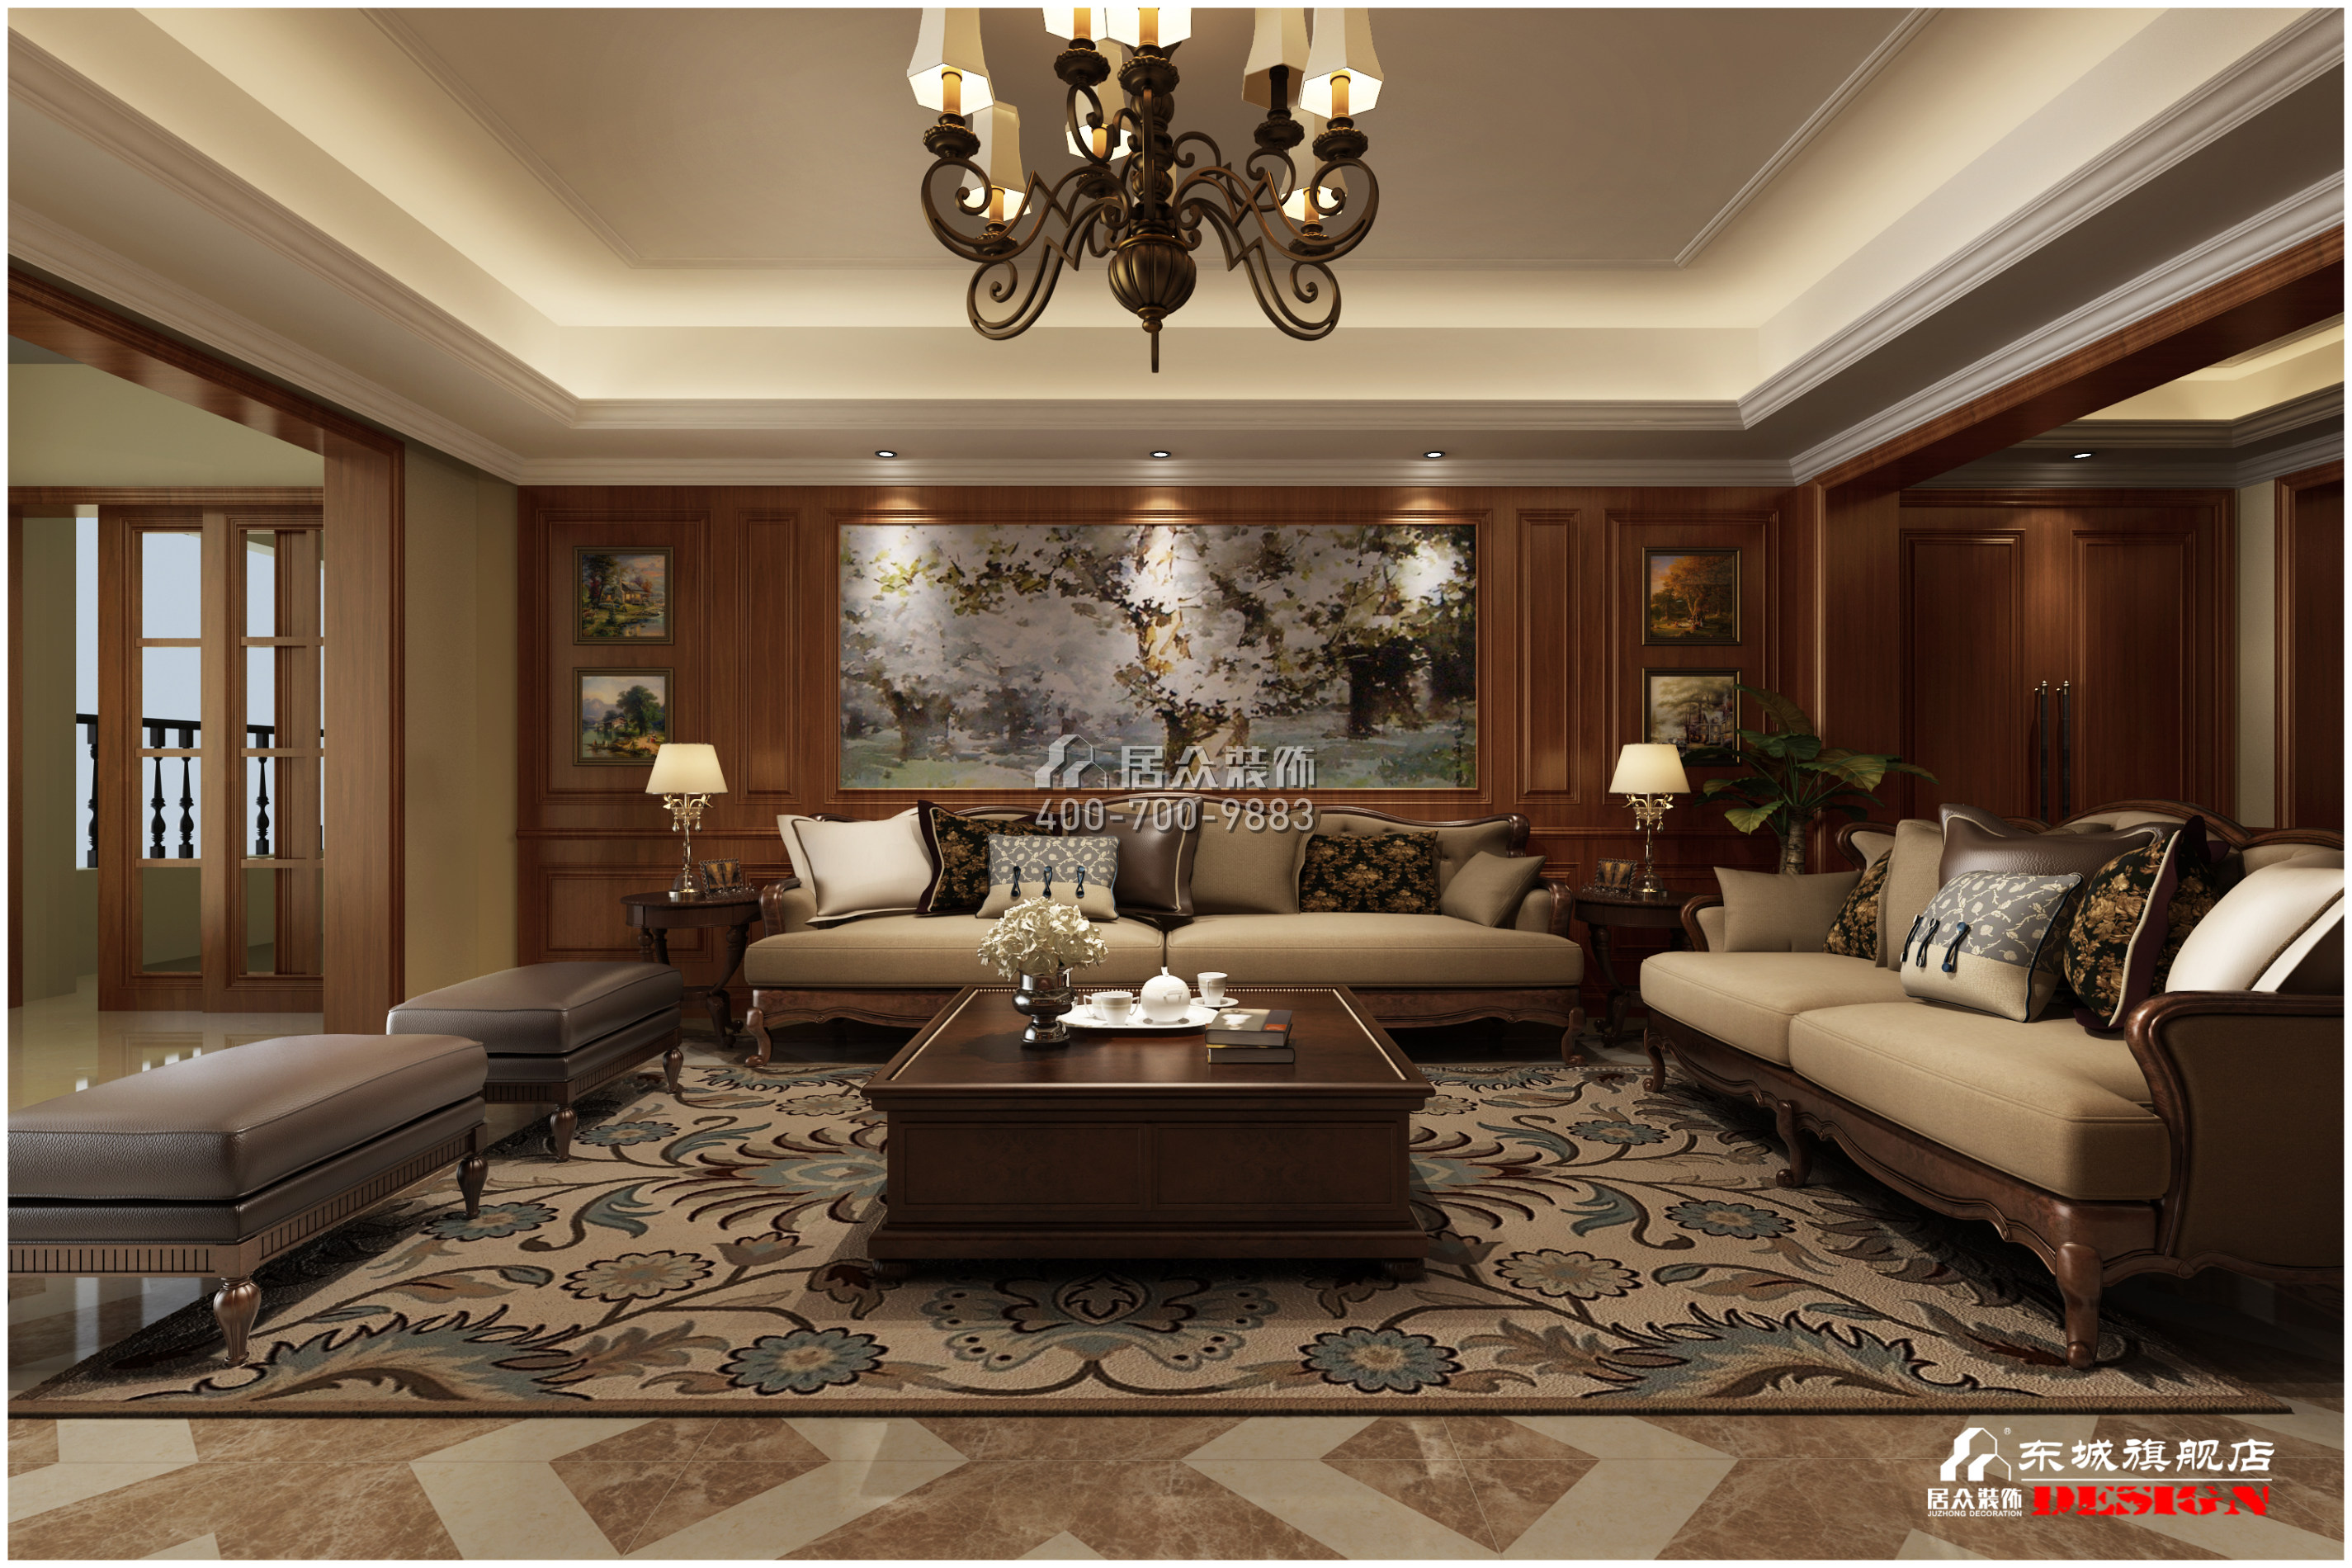 碧桂园天玺湾400平方米美式风格平层户型客厅装修效果图